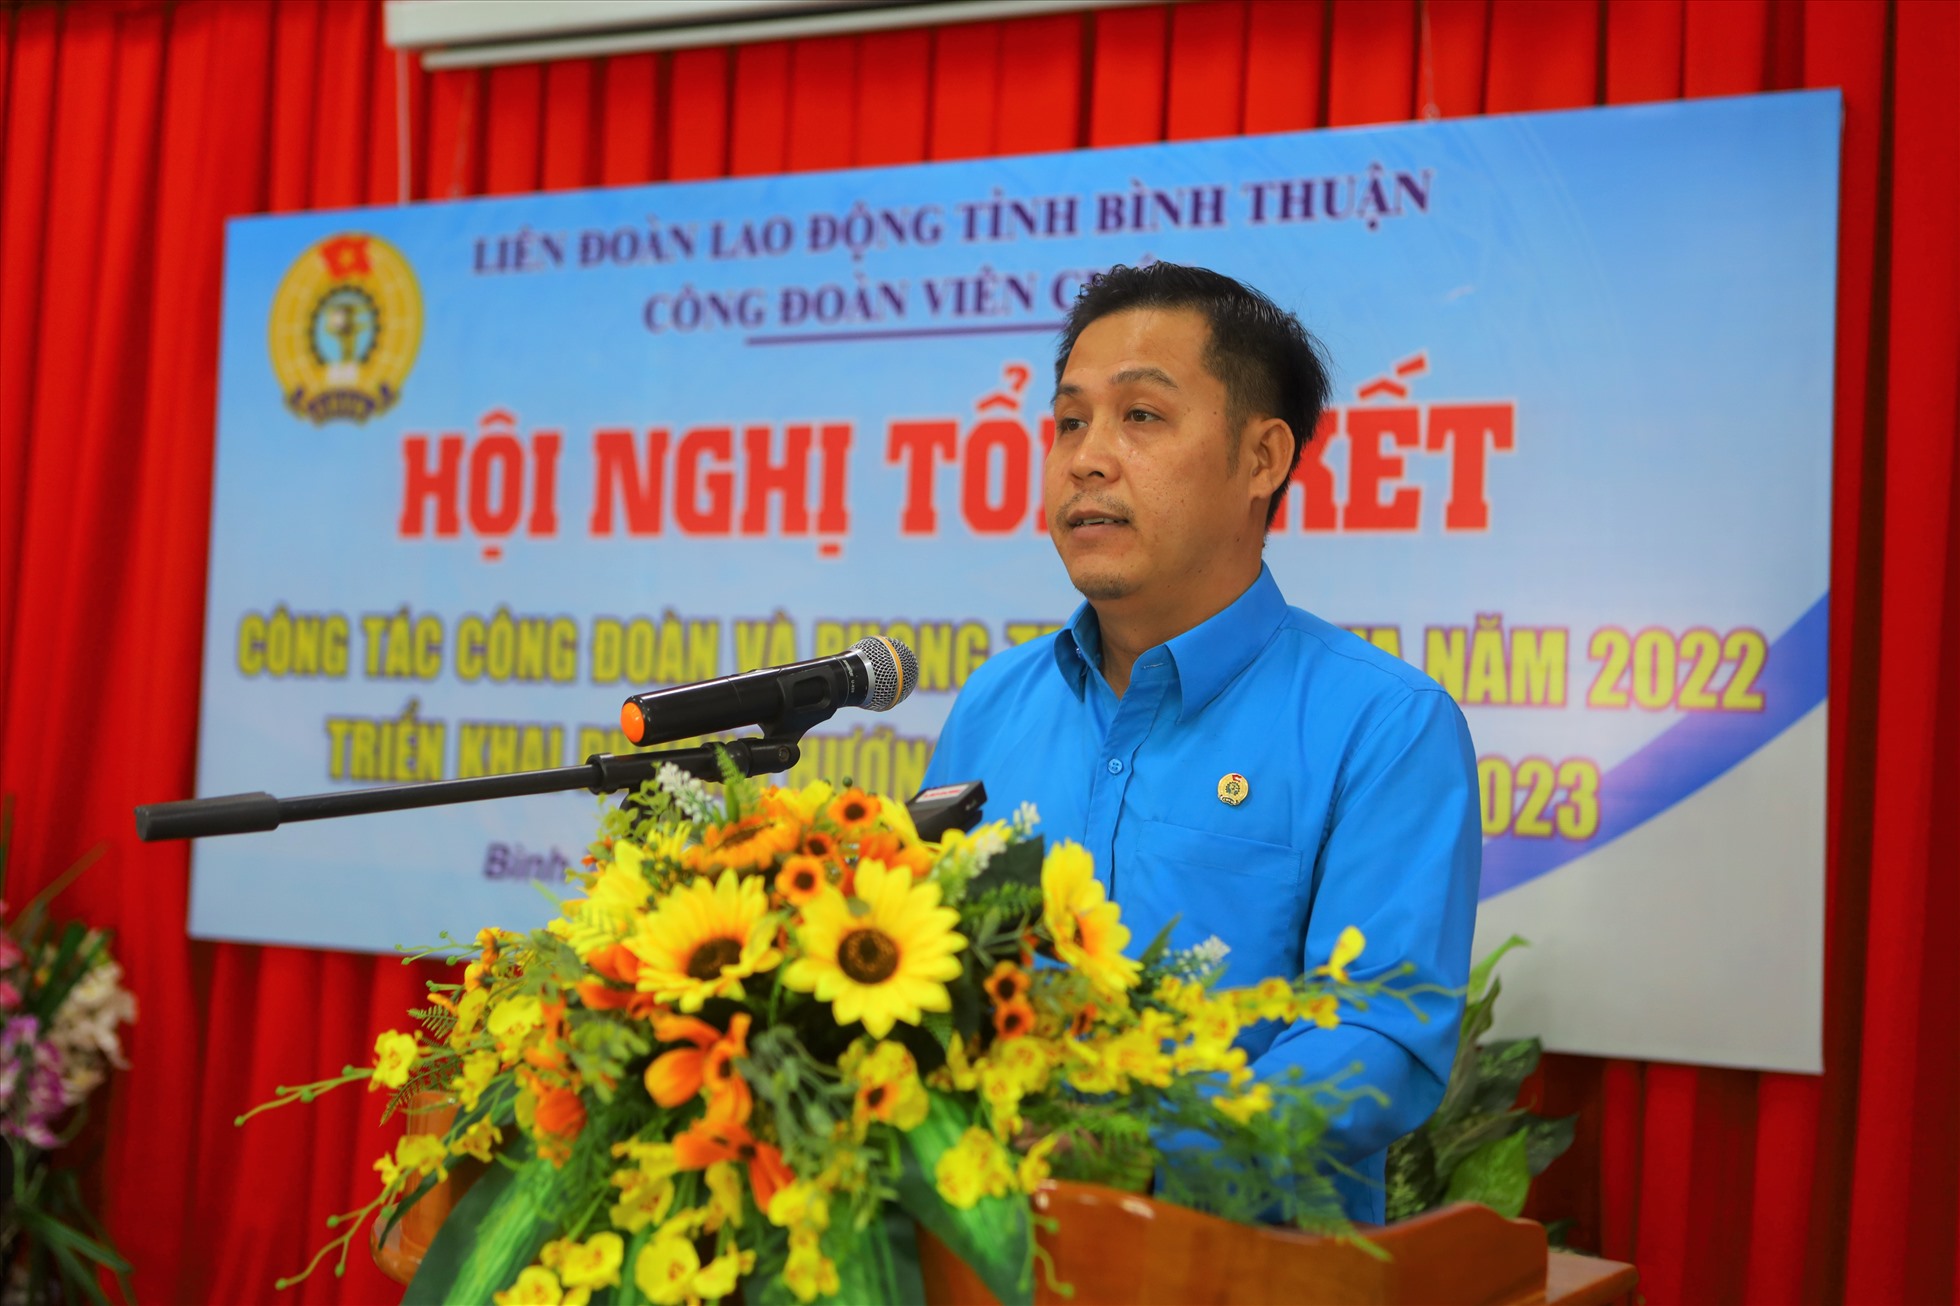 Đồng chí Trần Ngọc Phúc, Chủ tịch CĐVC tỉnh Bình Thuận điểm lại các kết quả nổi bật trong năm 2022. Ảnh: Duy Tuấn